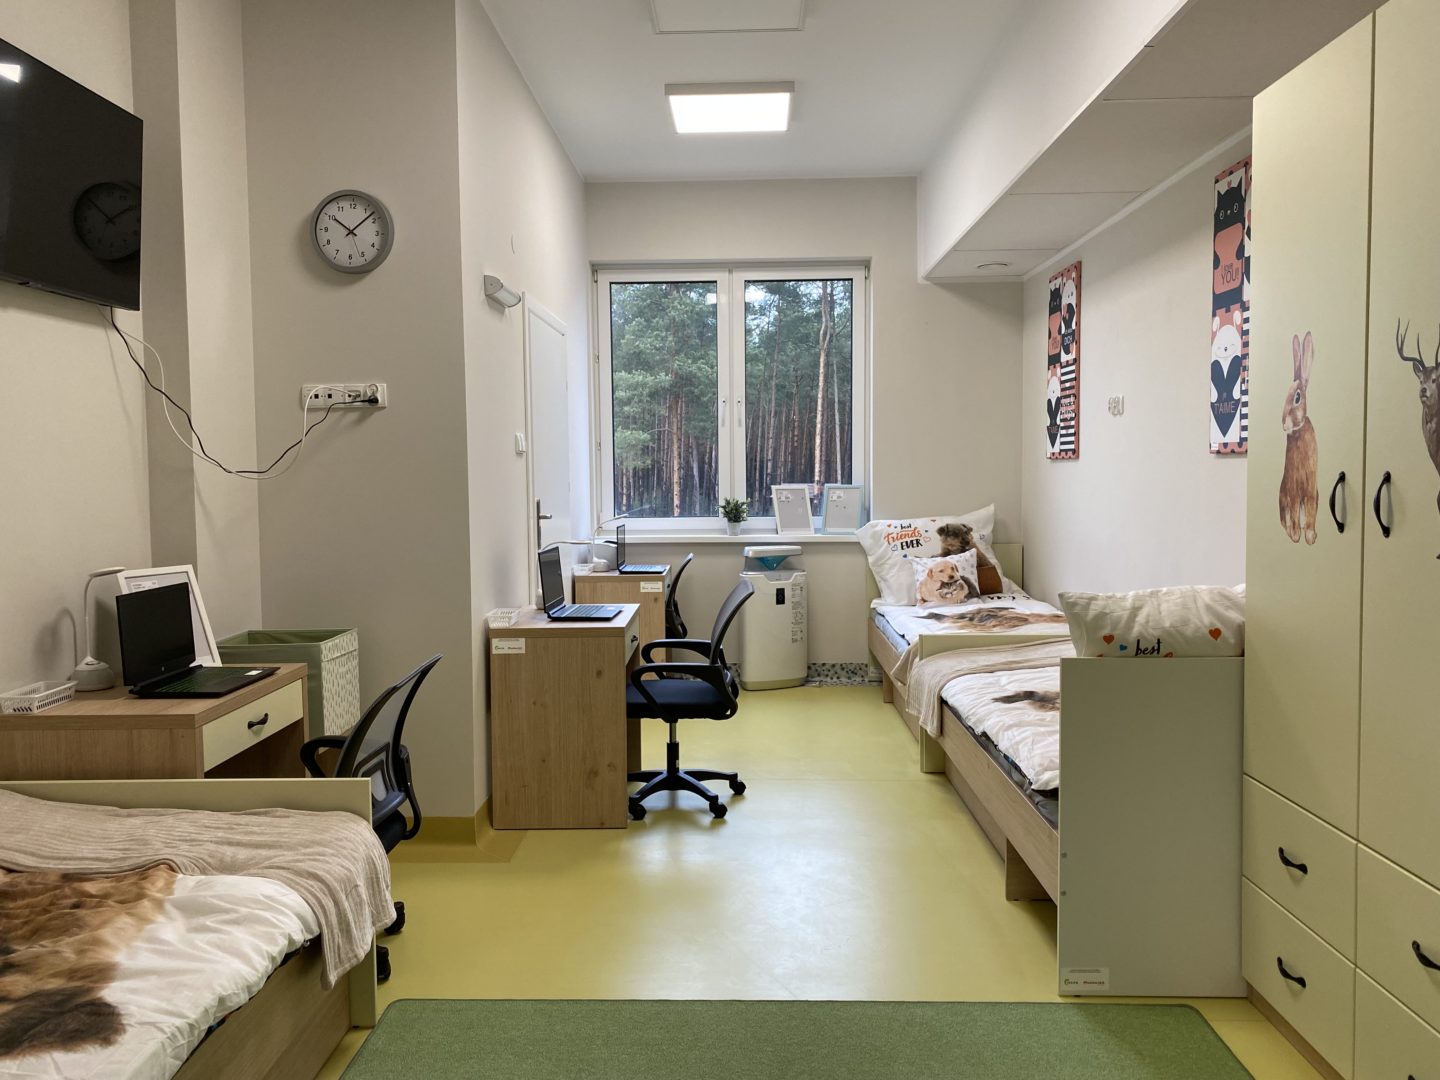 Zdjęcie przedstawia pokój 2 w nowej placówce terapeutycznej dla dzieci